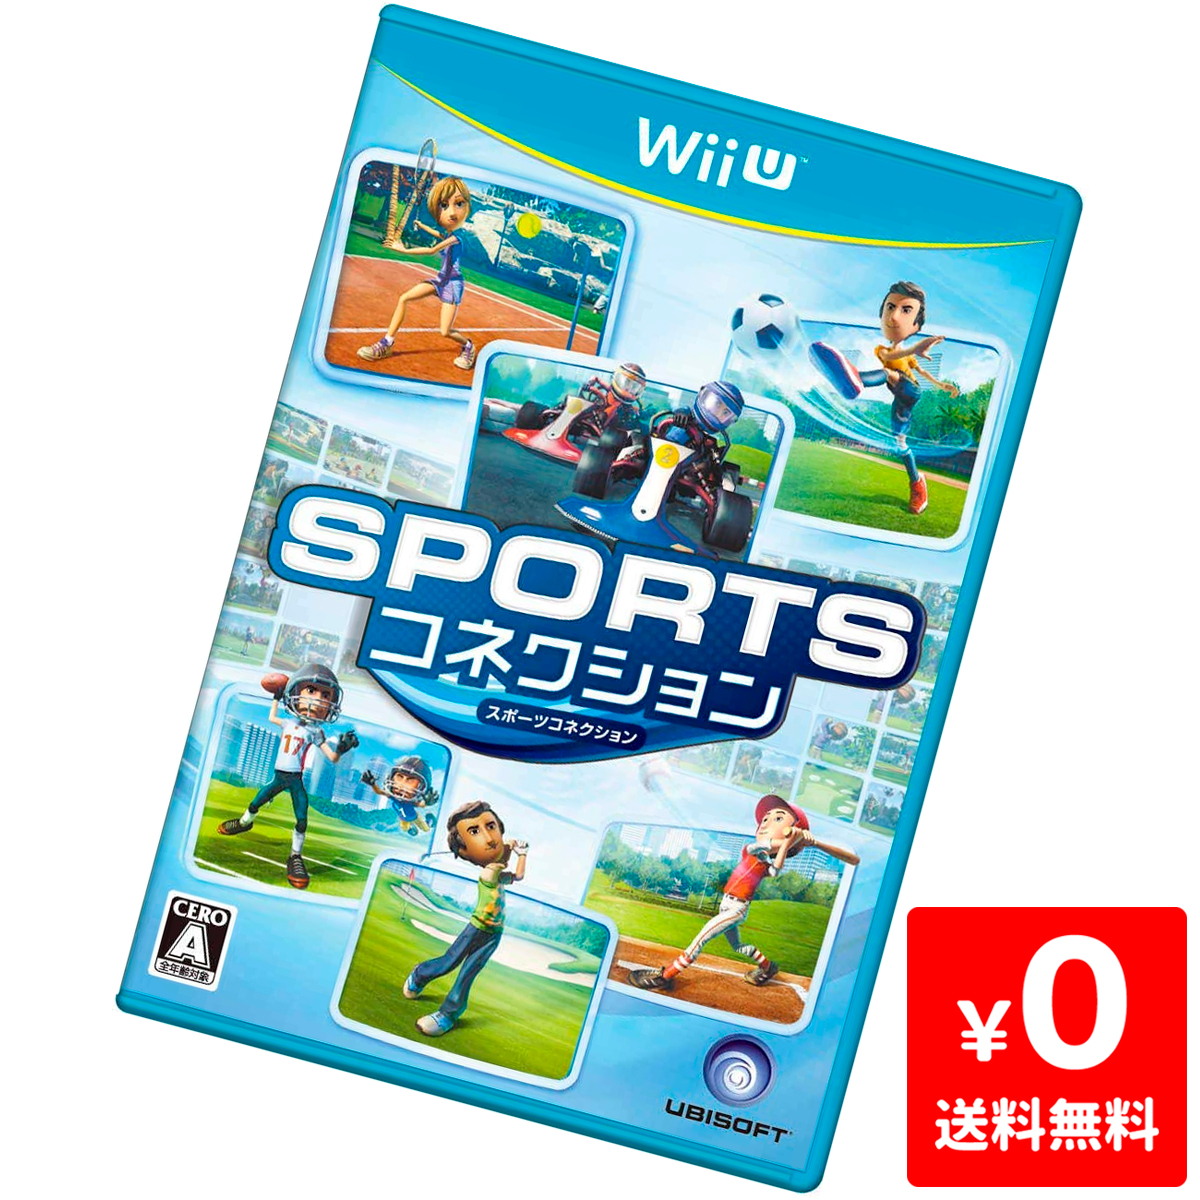 楽天市場 Wiiu ニンテンドーwii U ウィーユー スポーツコネクション ソフト 任天堂 Nintendo 中古 Iimo リユース店